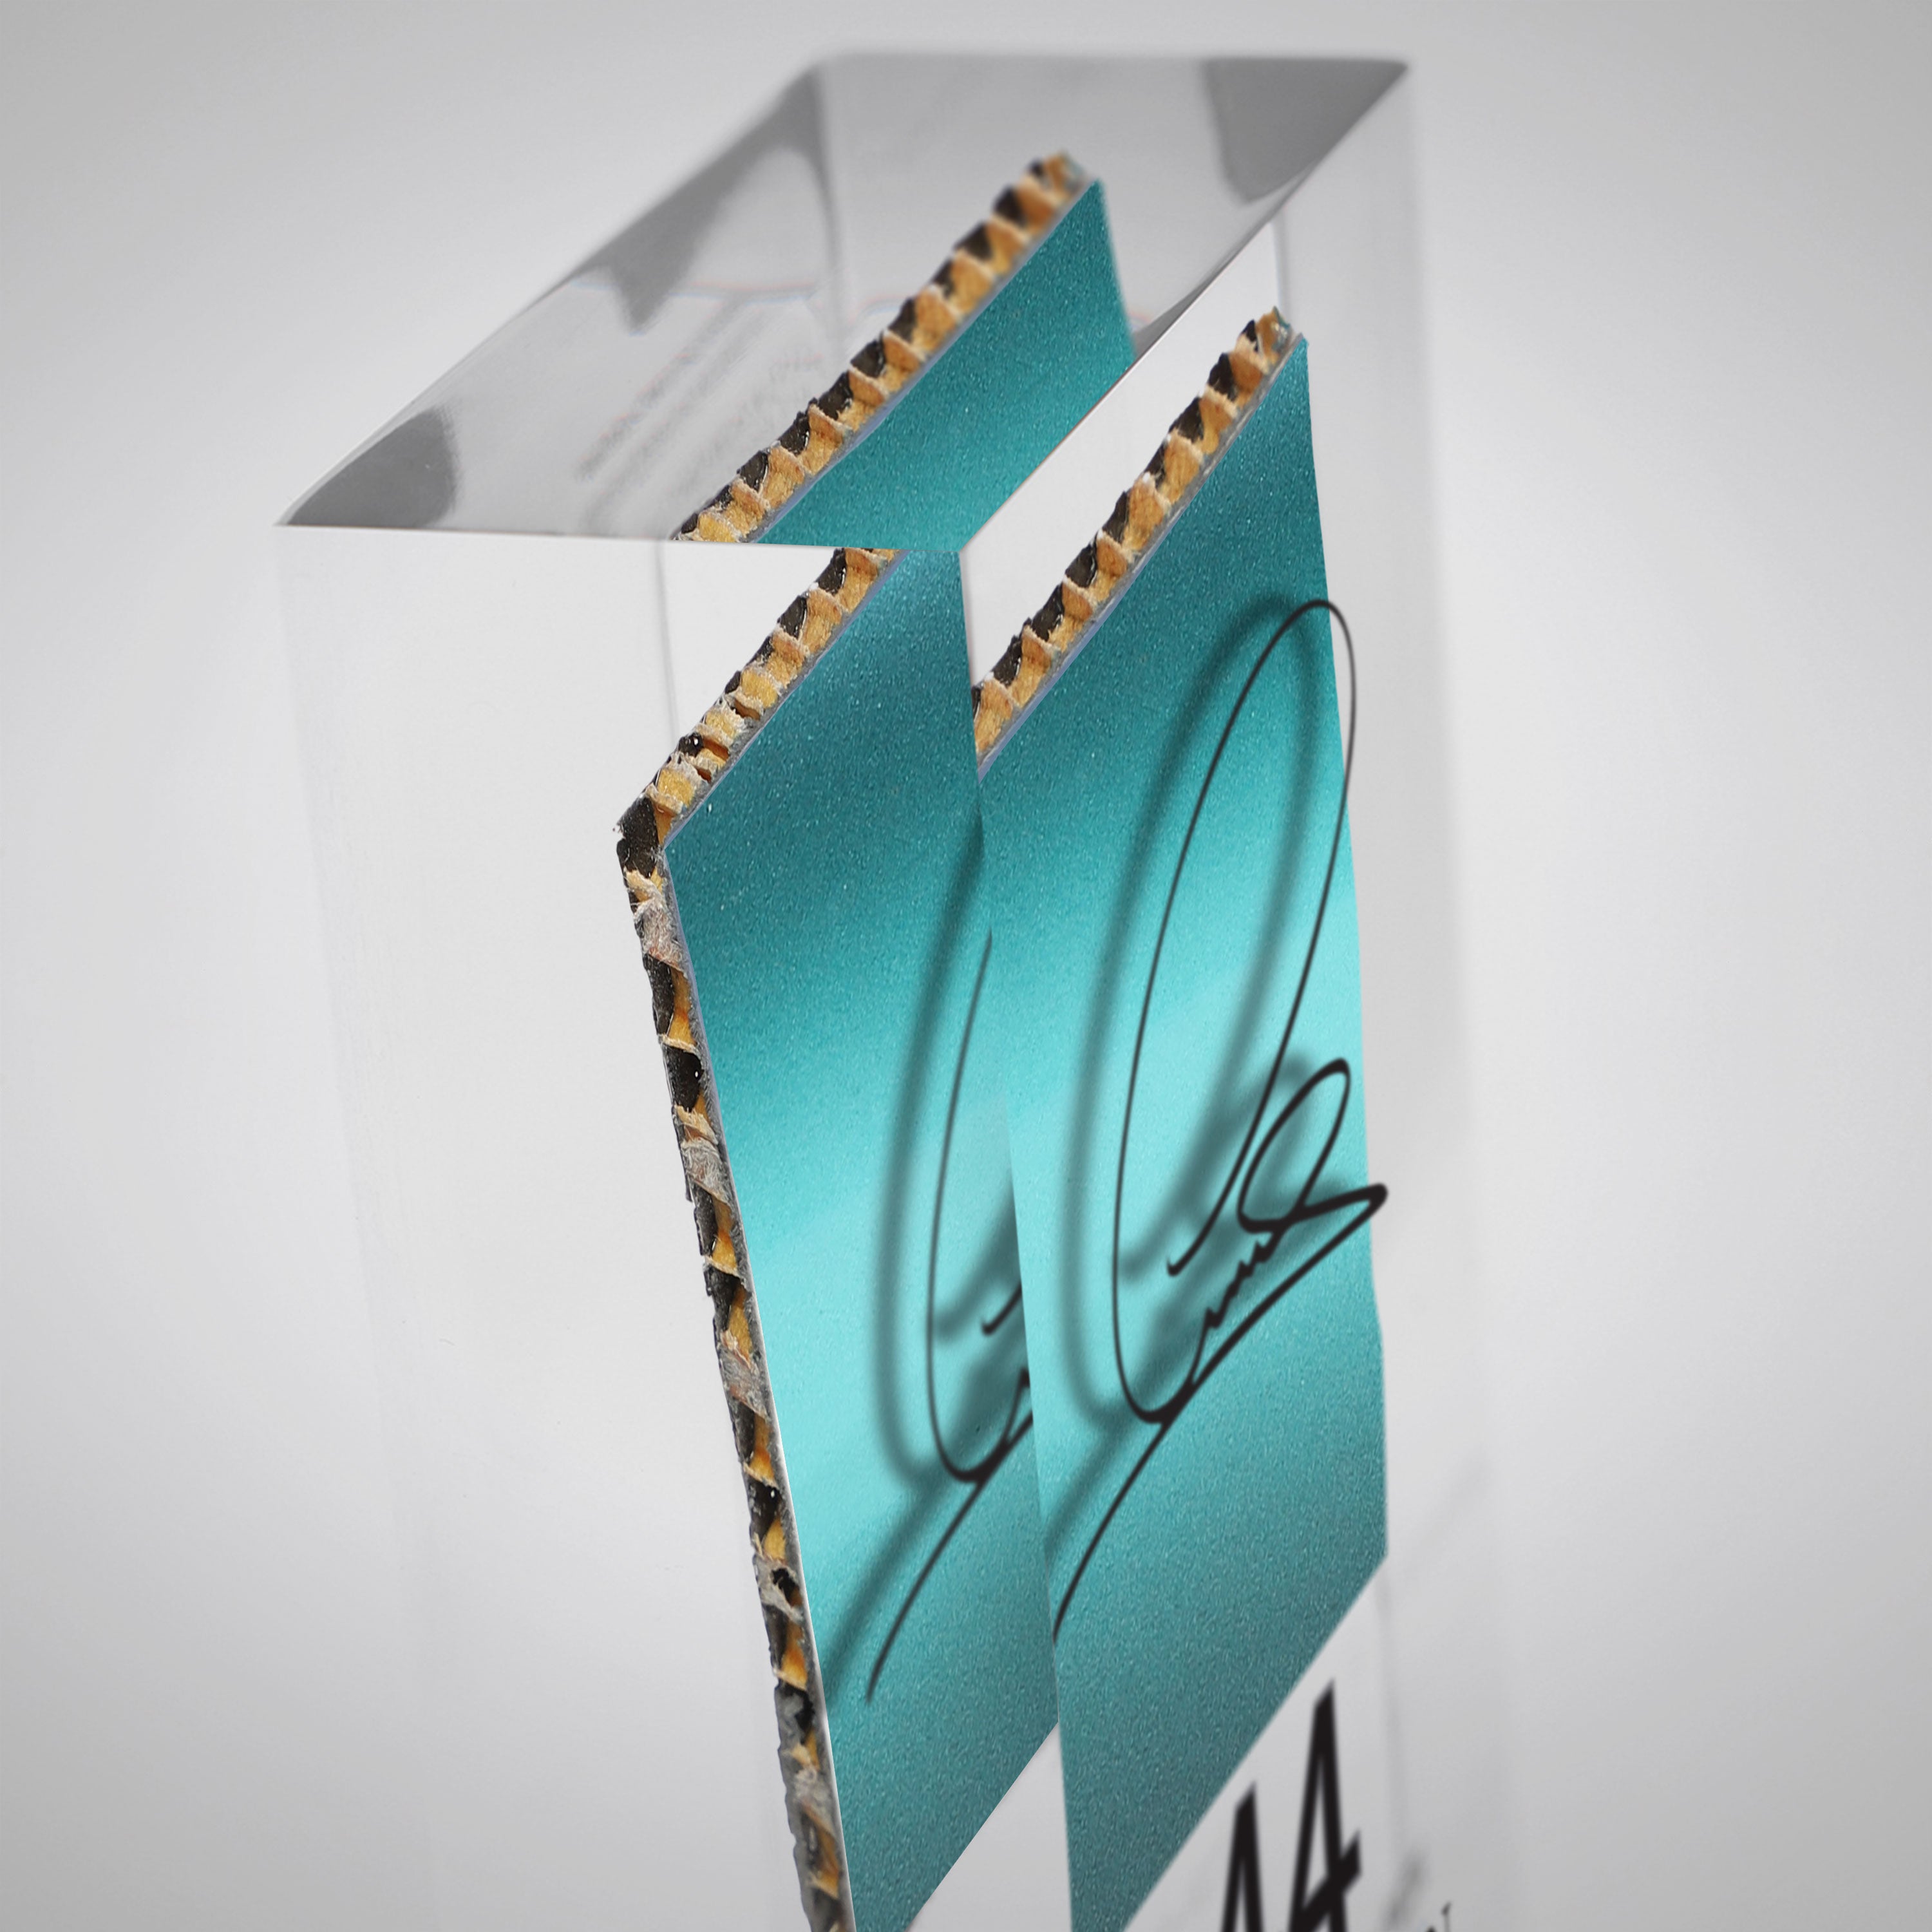 Lewis Hamilton 2015 Bodywork in Acrylic